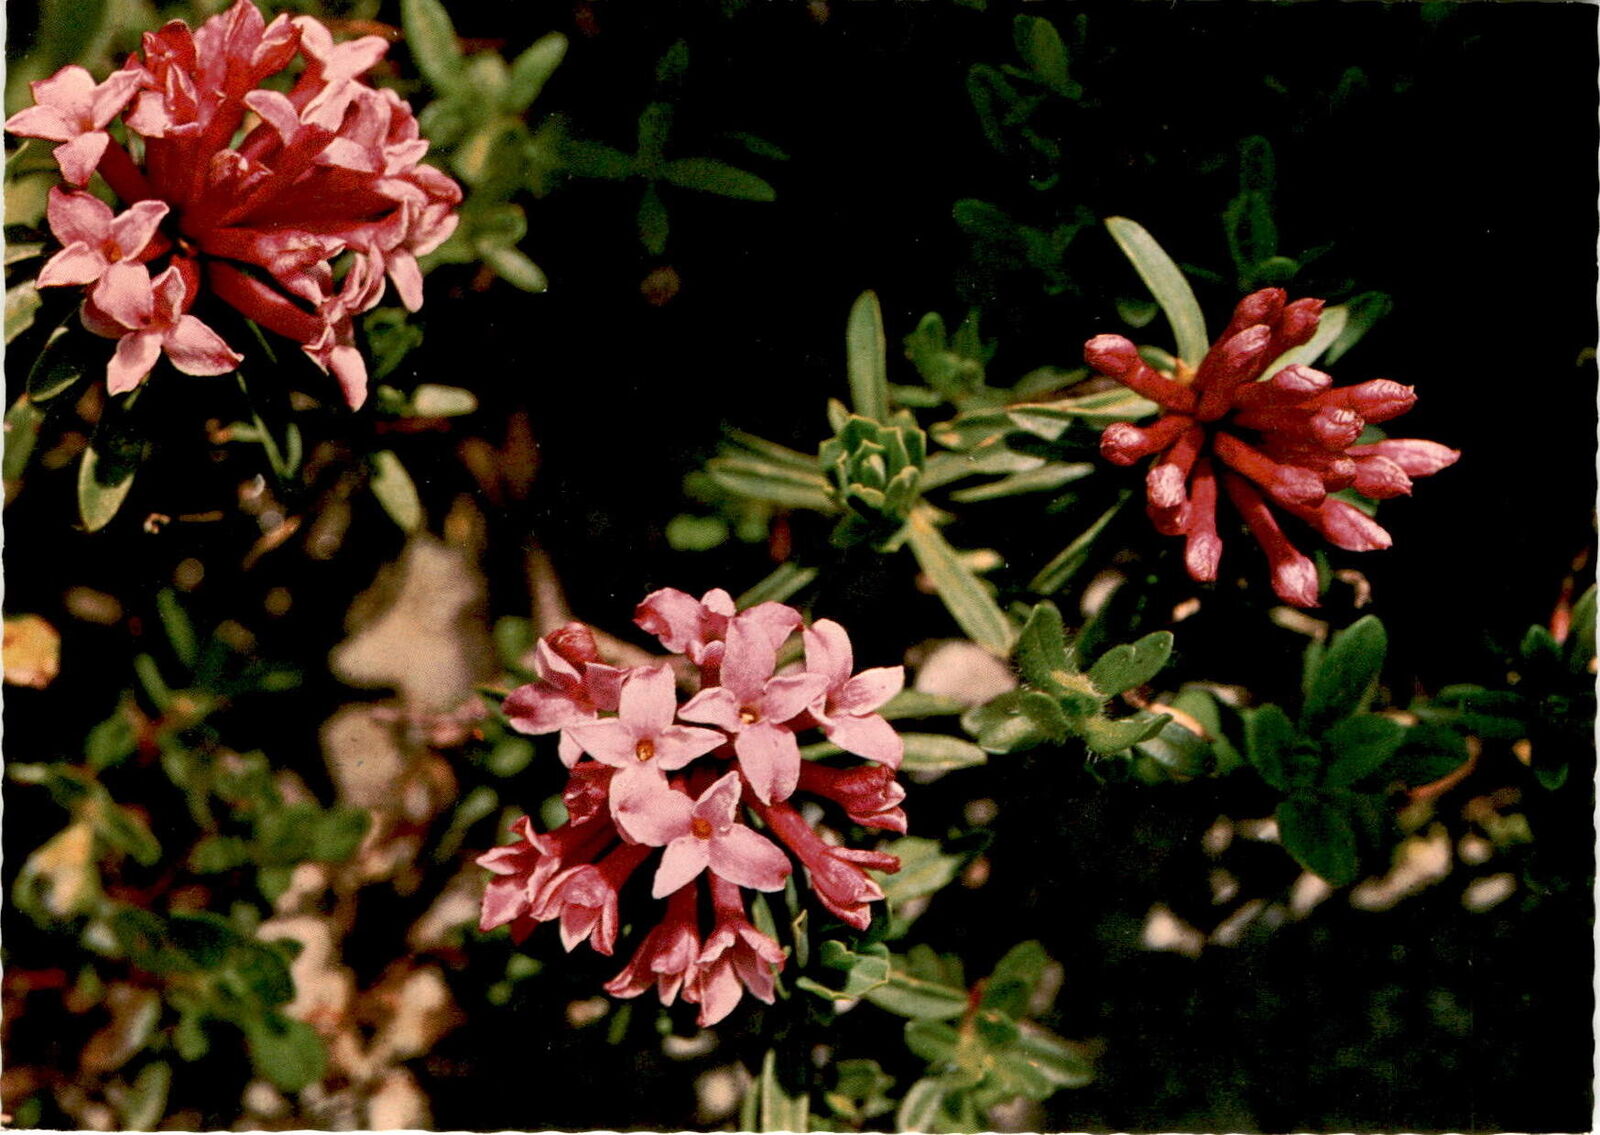 Daphne striata, Steinröschen, Garland flower, Bois joli, Karl Postcard